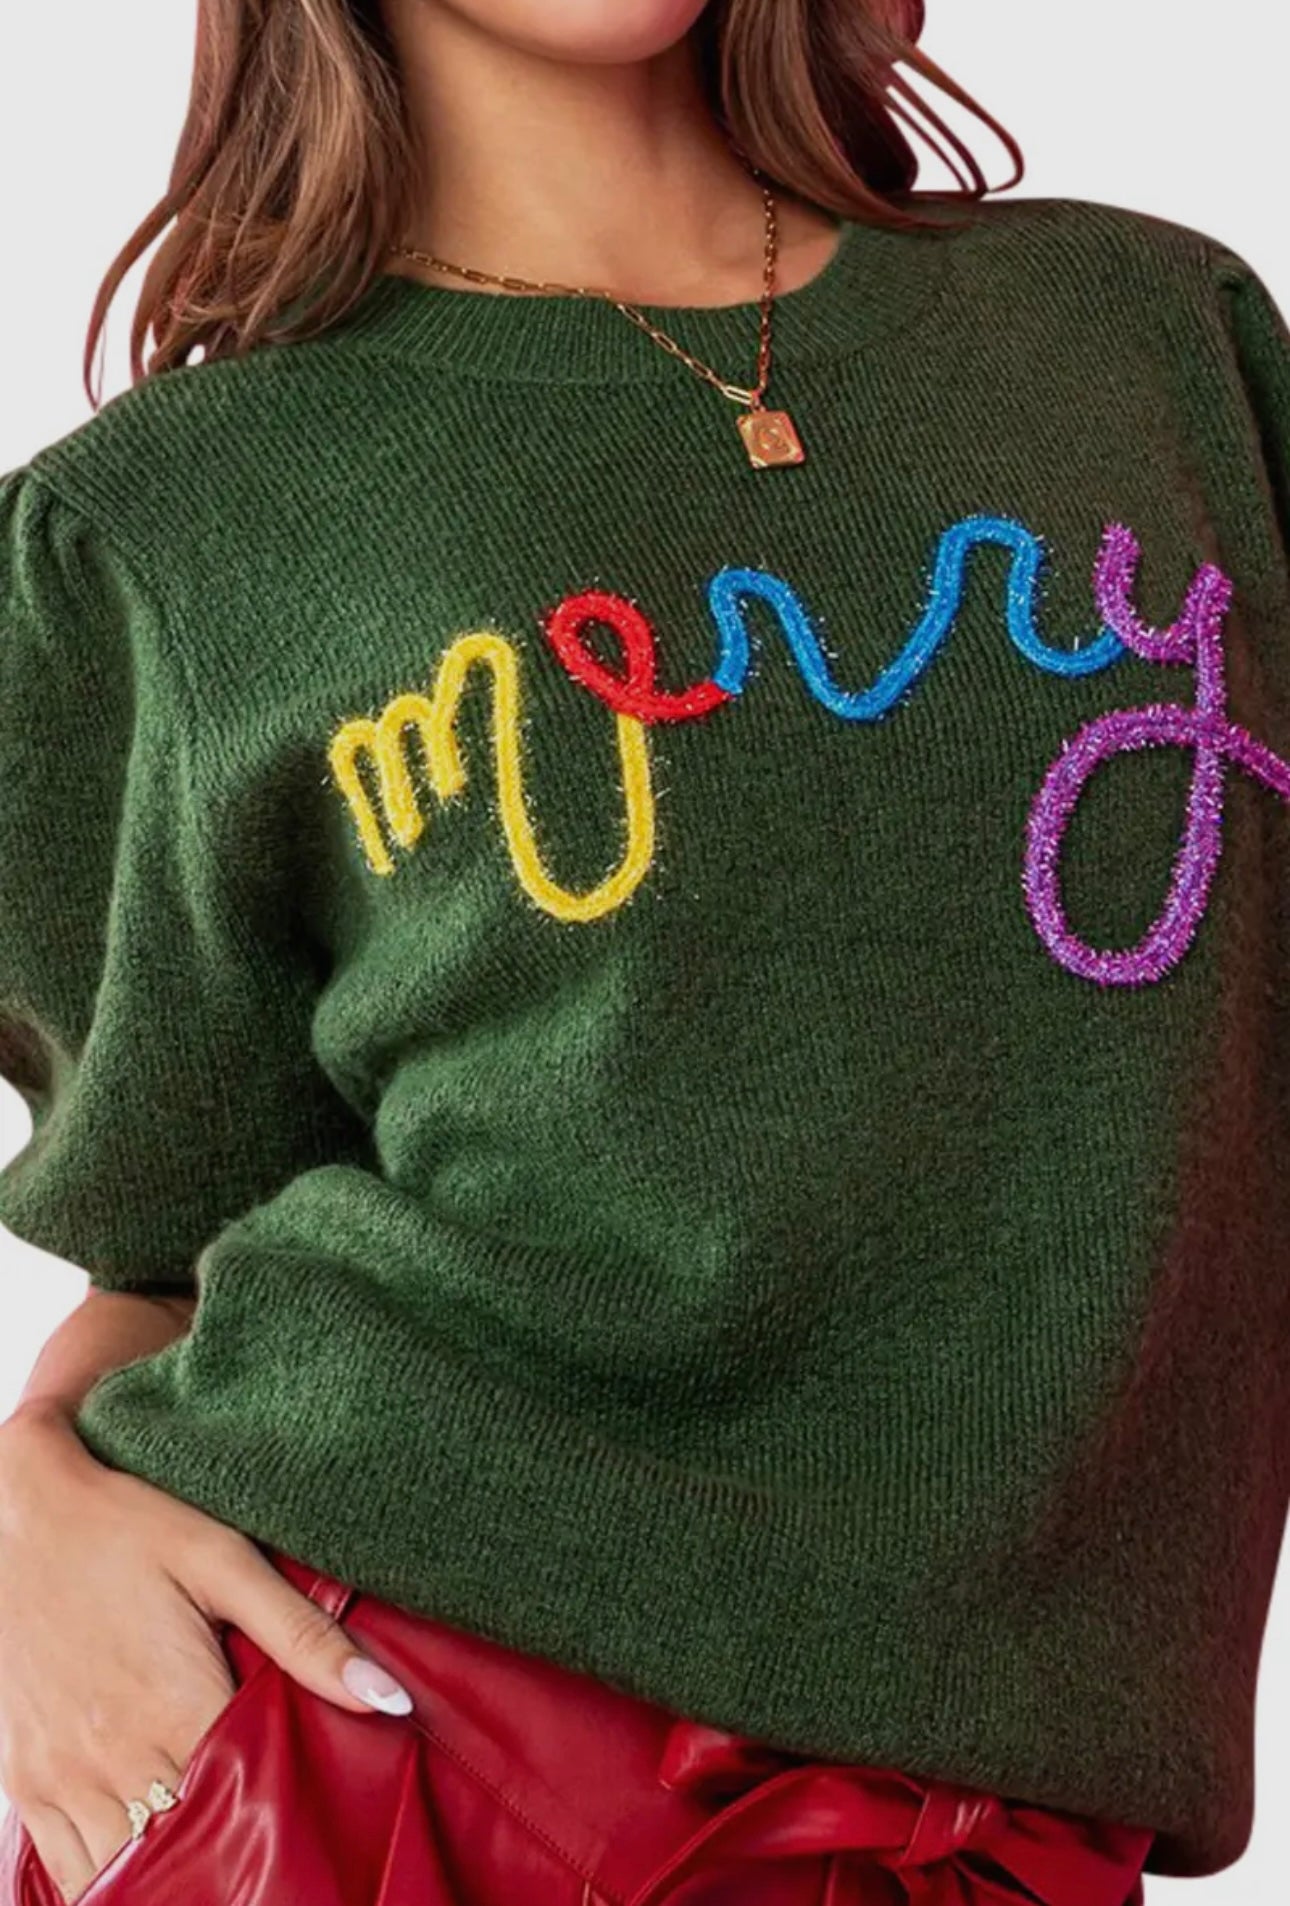 Women’s “Merry” Sweater